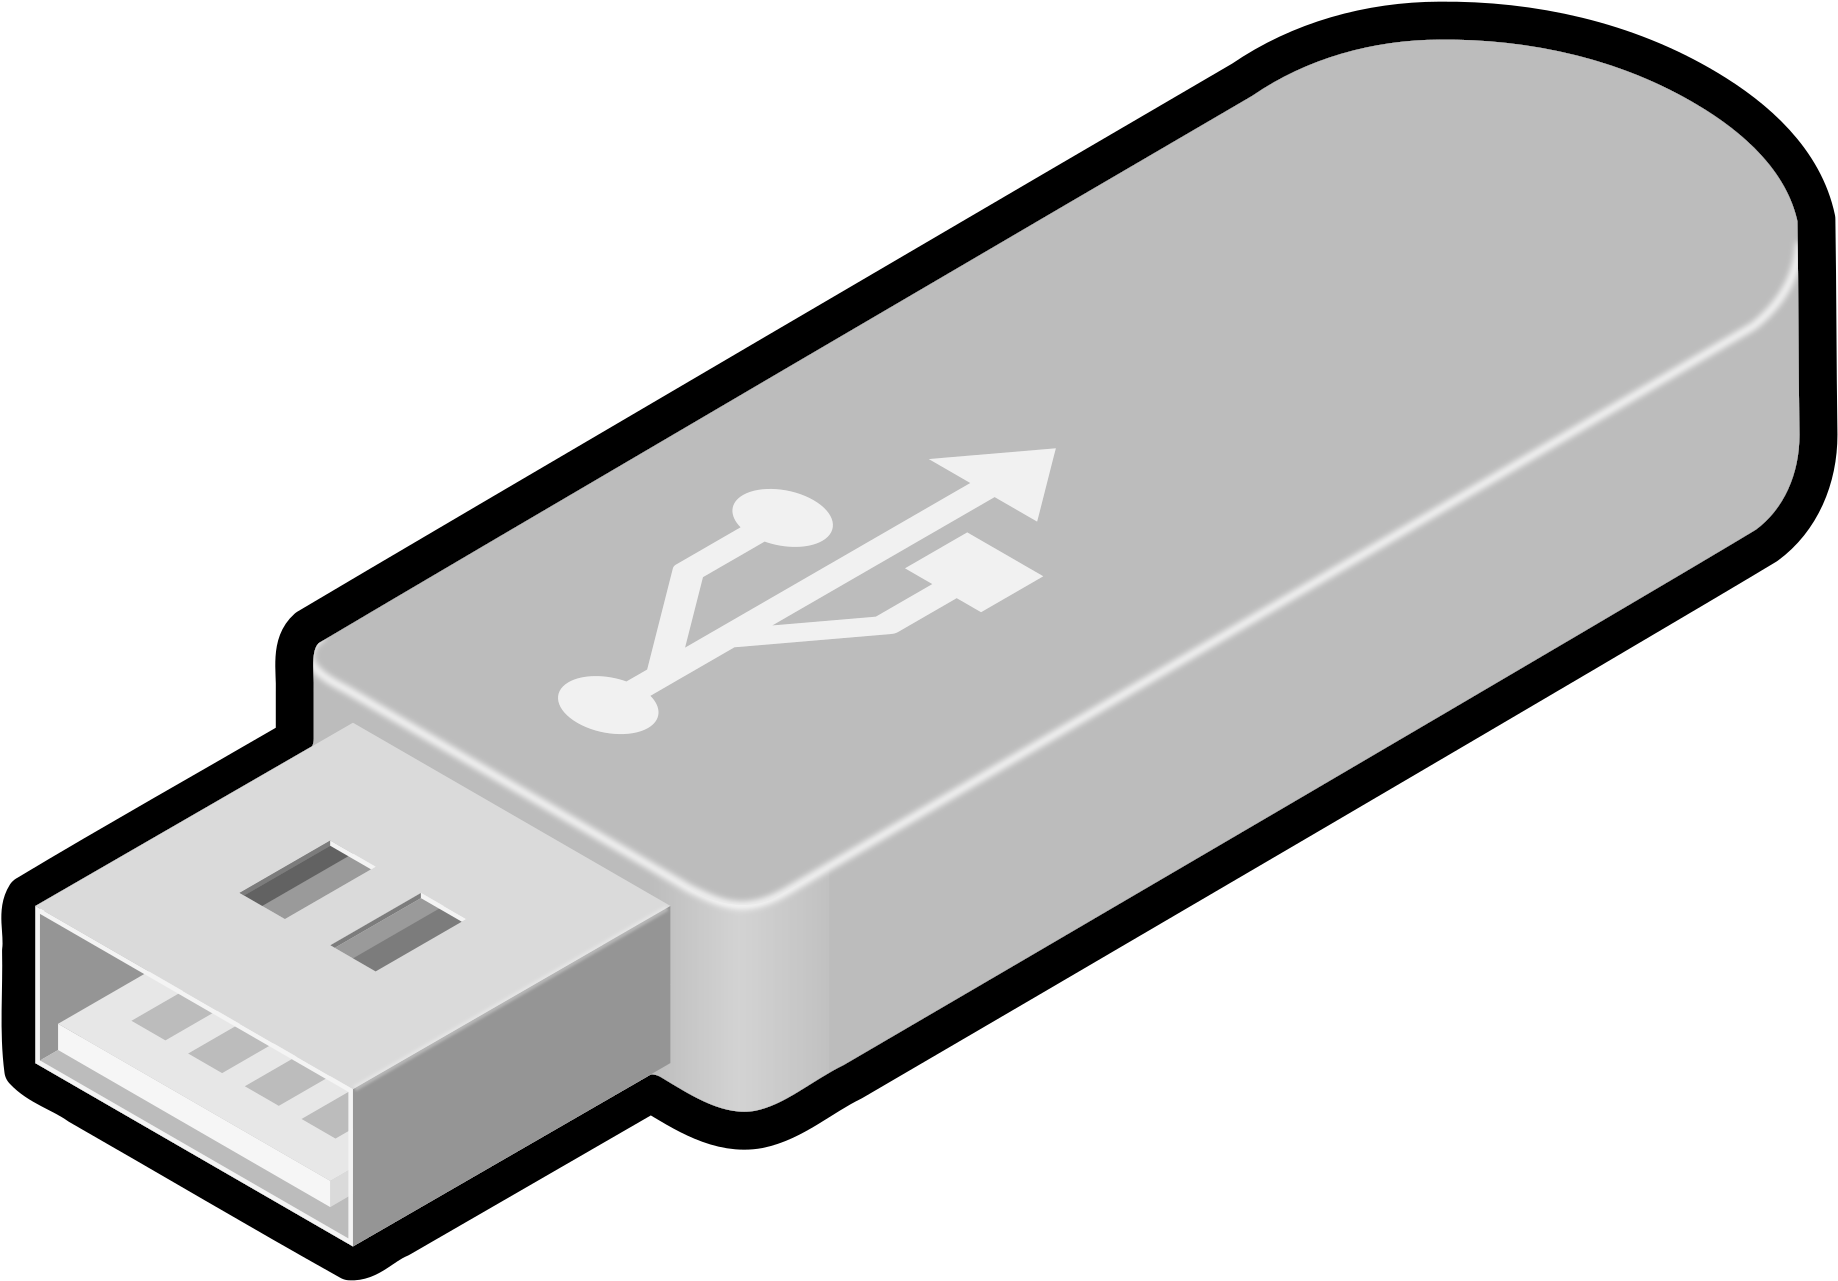 USB Flash Drive Transparent Images